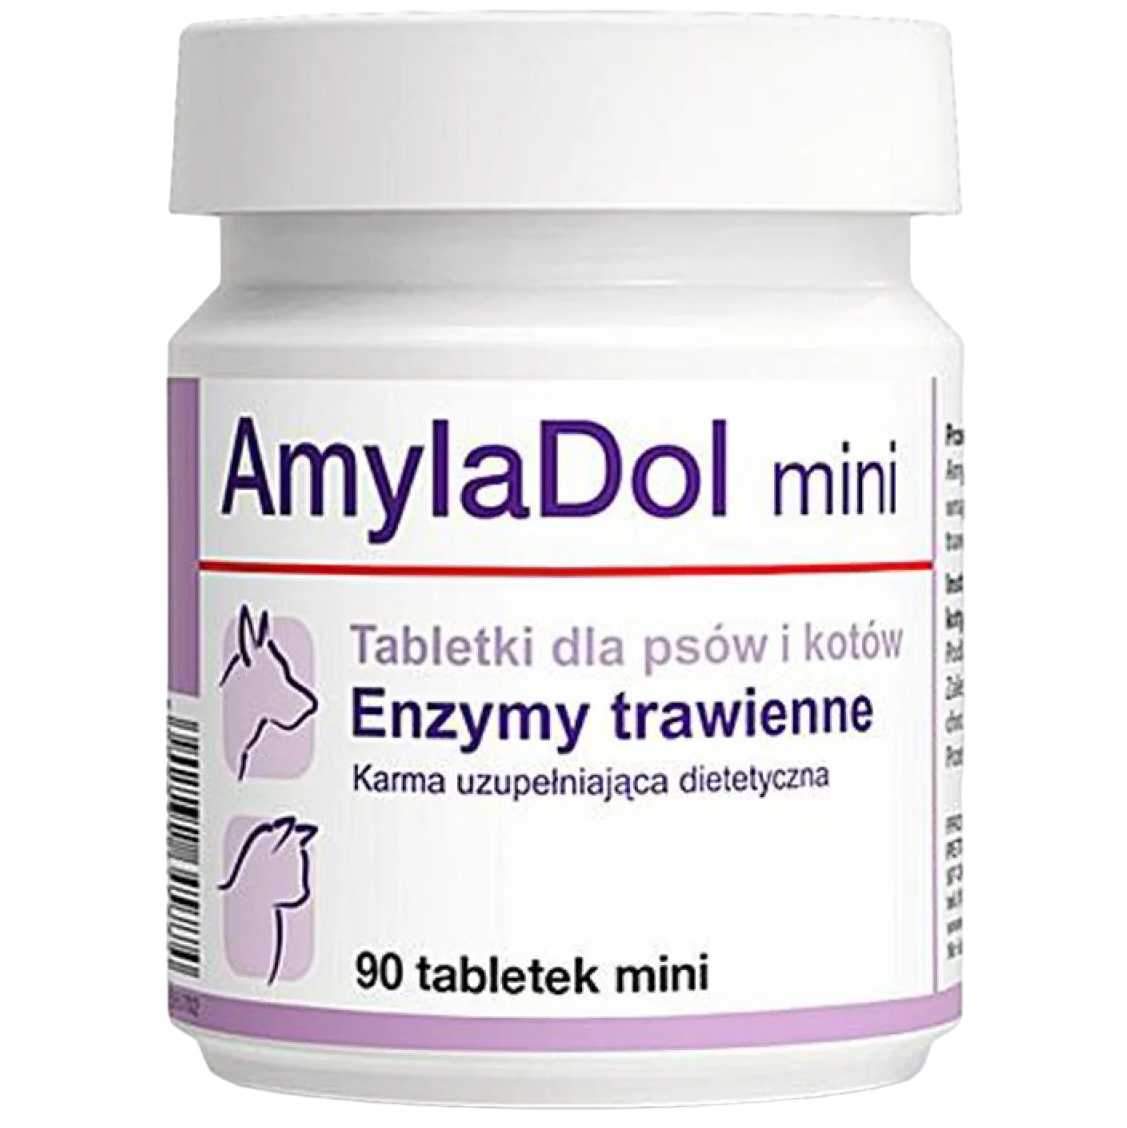 Photos - Dog Medicines & Vitamins Dolfos Вітамінно-мінеральна добавка  AmylaDol mini при захворюваннях підшлу 